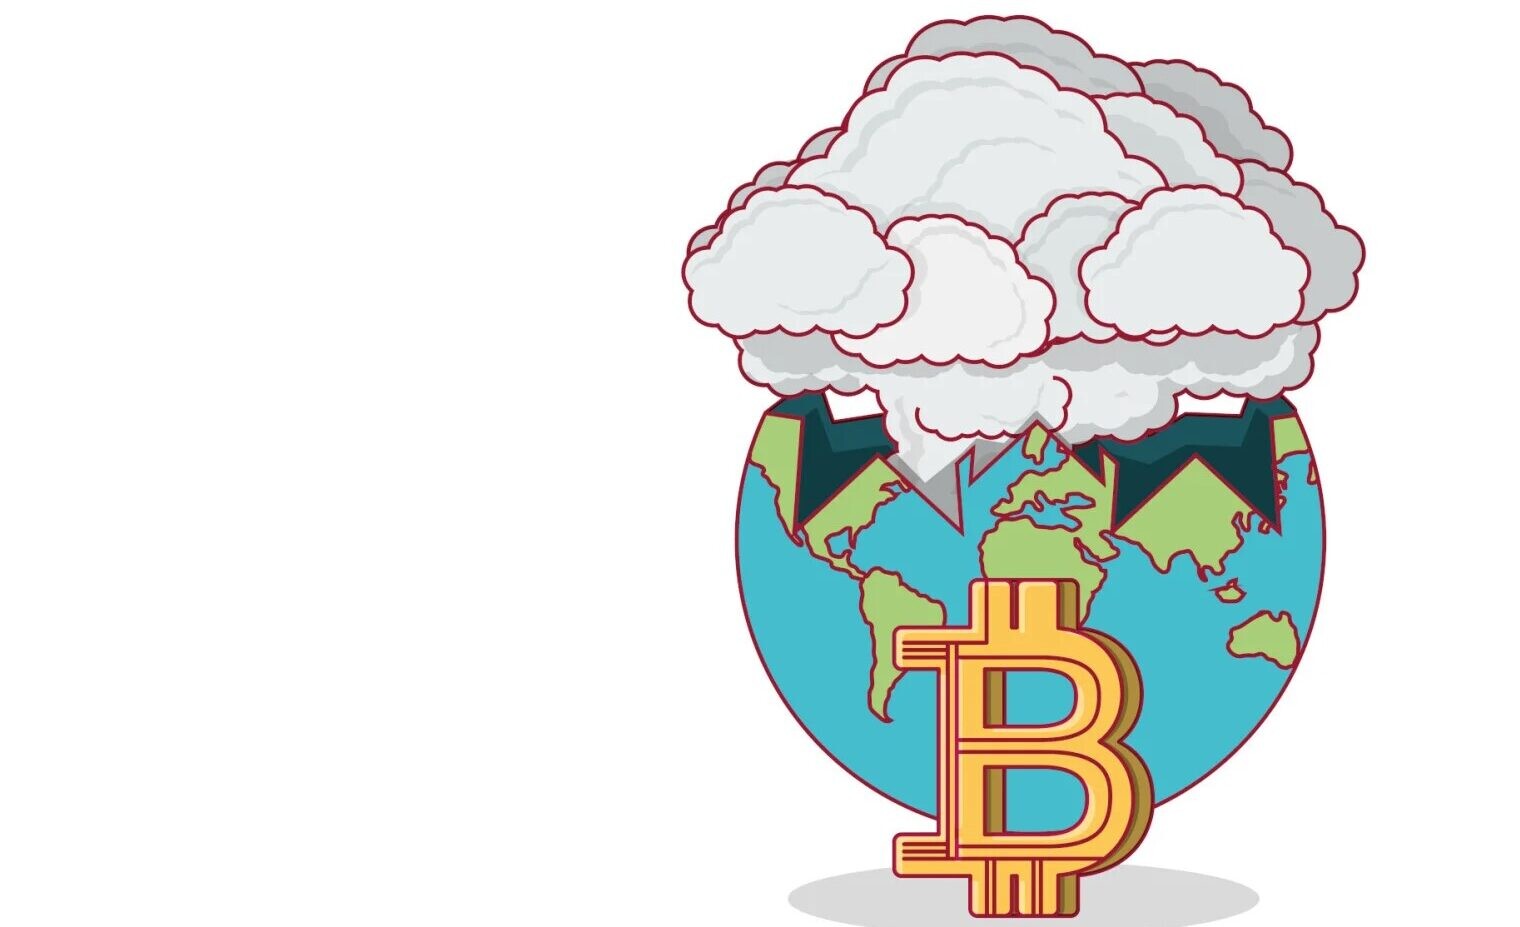 Je bitcoin priateľský k životnému prostrediu? Nová správa prináša prekvapivé zistenia